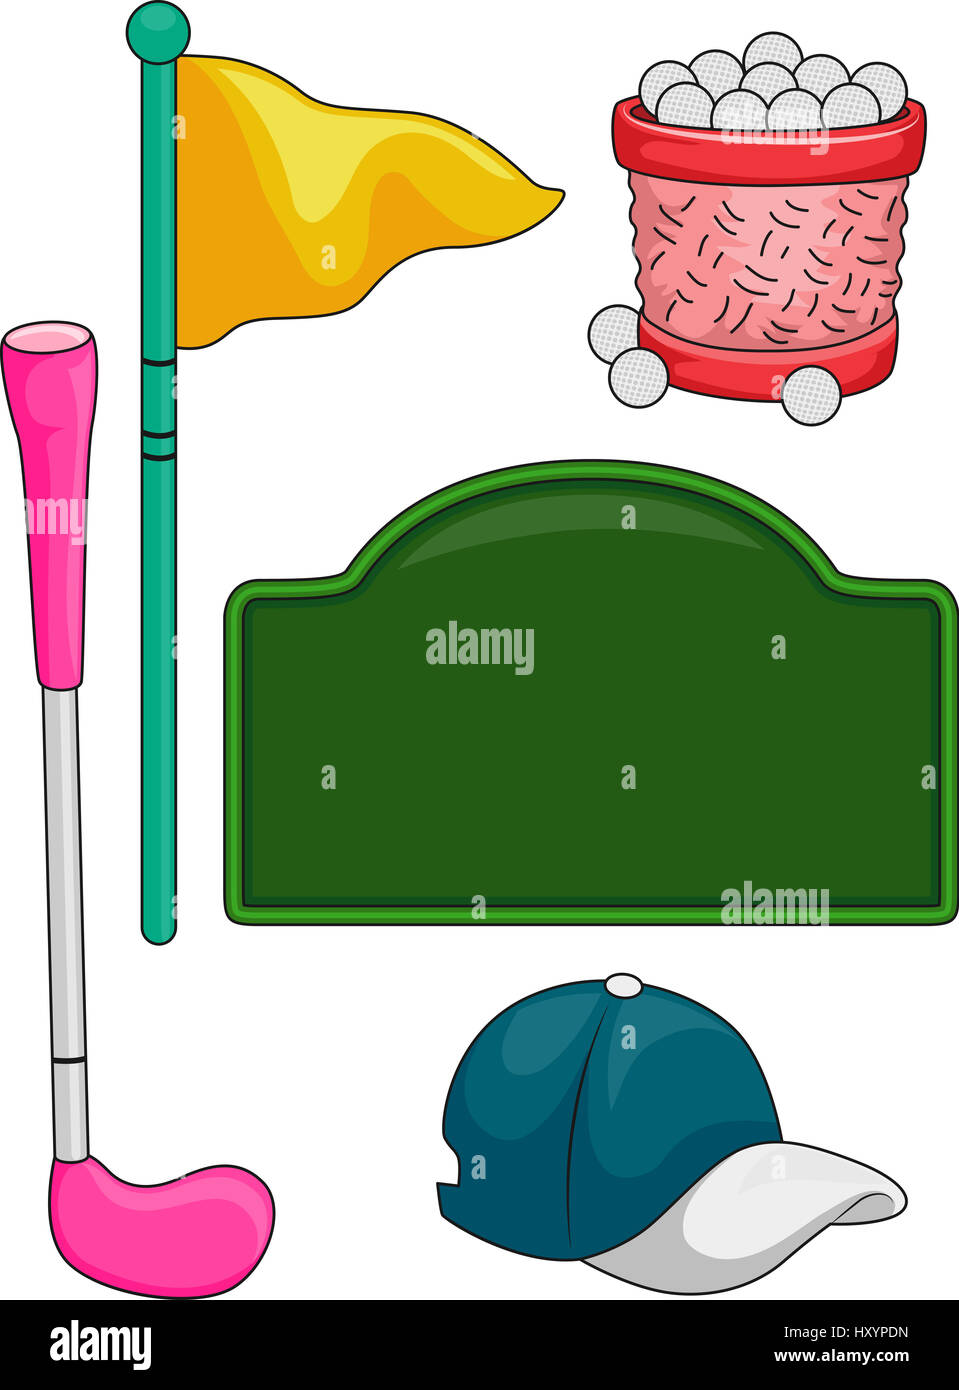 Darstellung der Elemente in der Regel im Zusammenhang mit Golf für Kinder Stockfoto